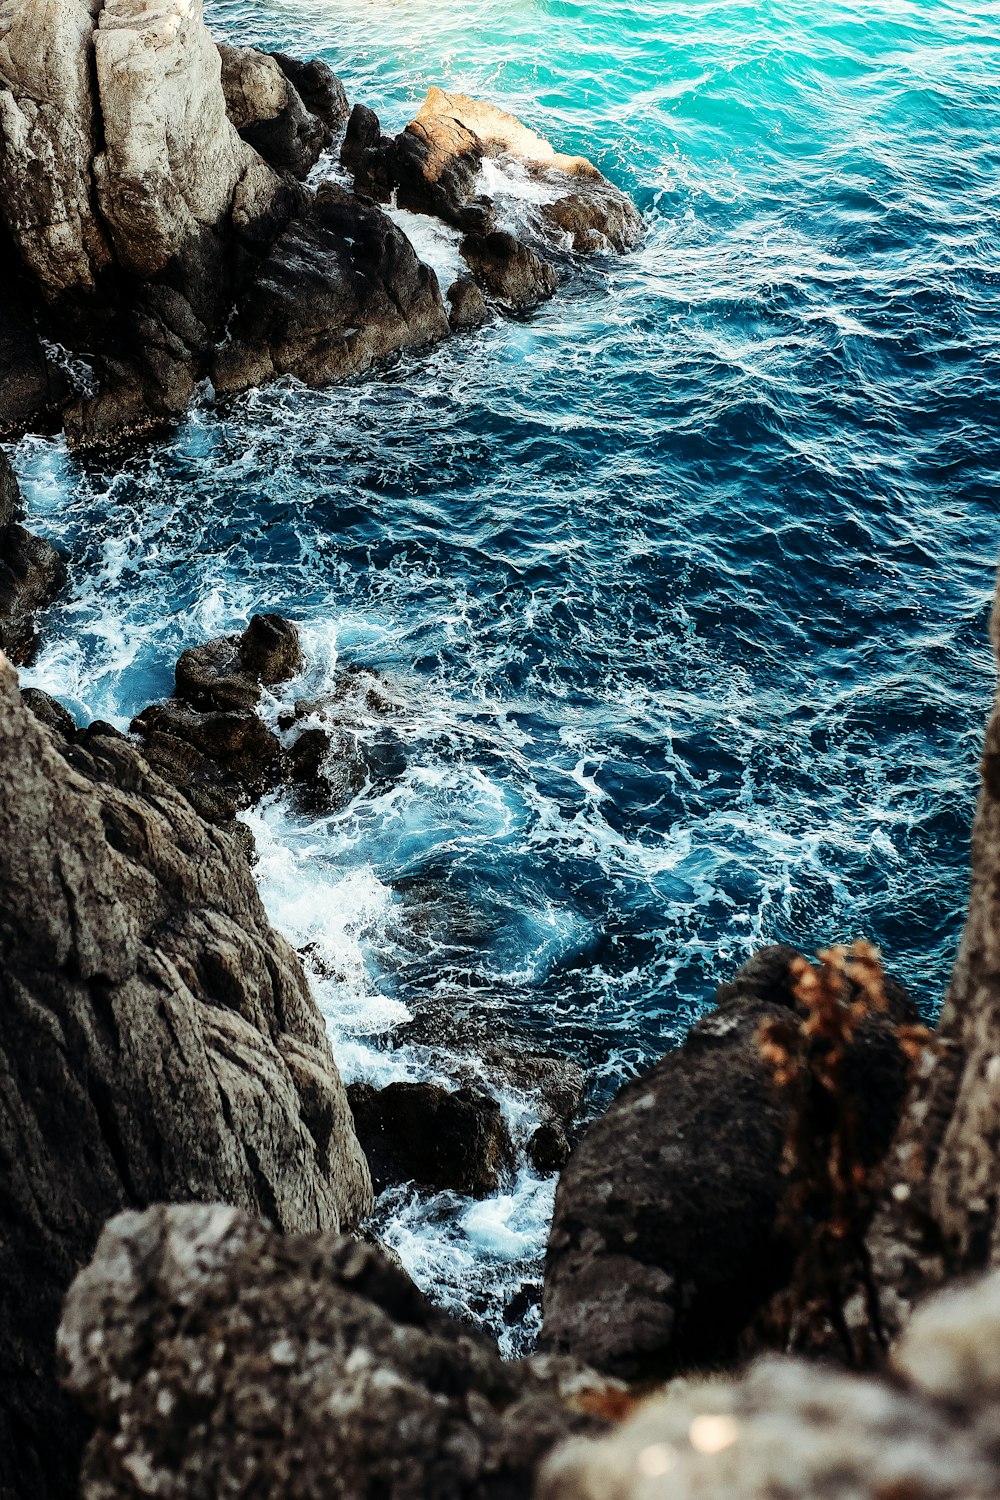 Montagne rocheuse brune au bord de la mer bleue pendant la journée